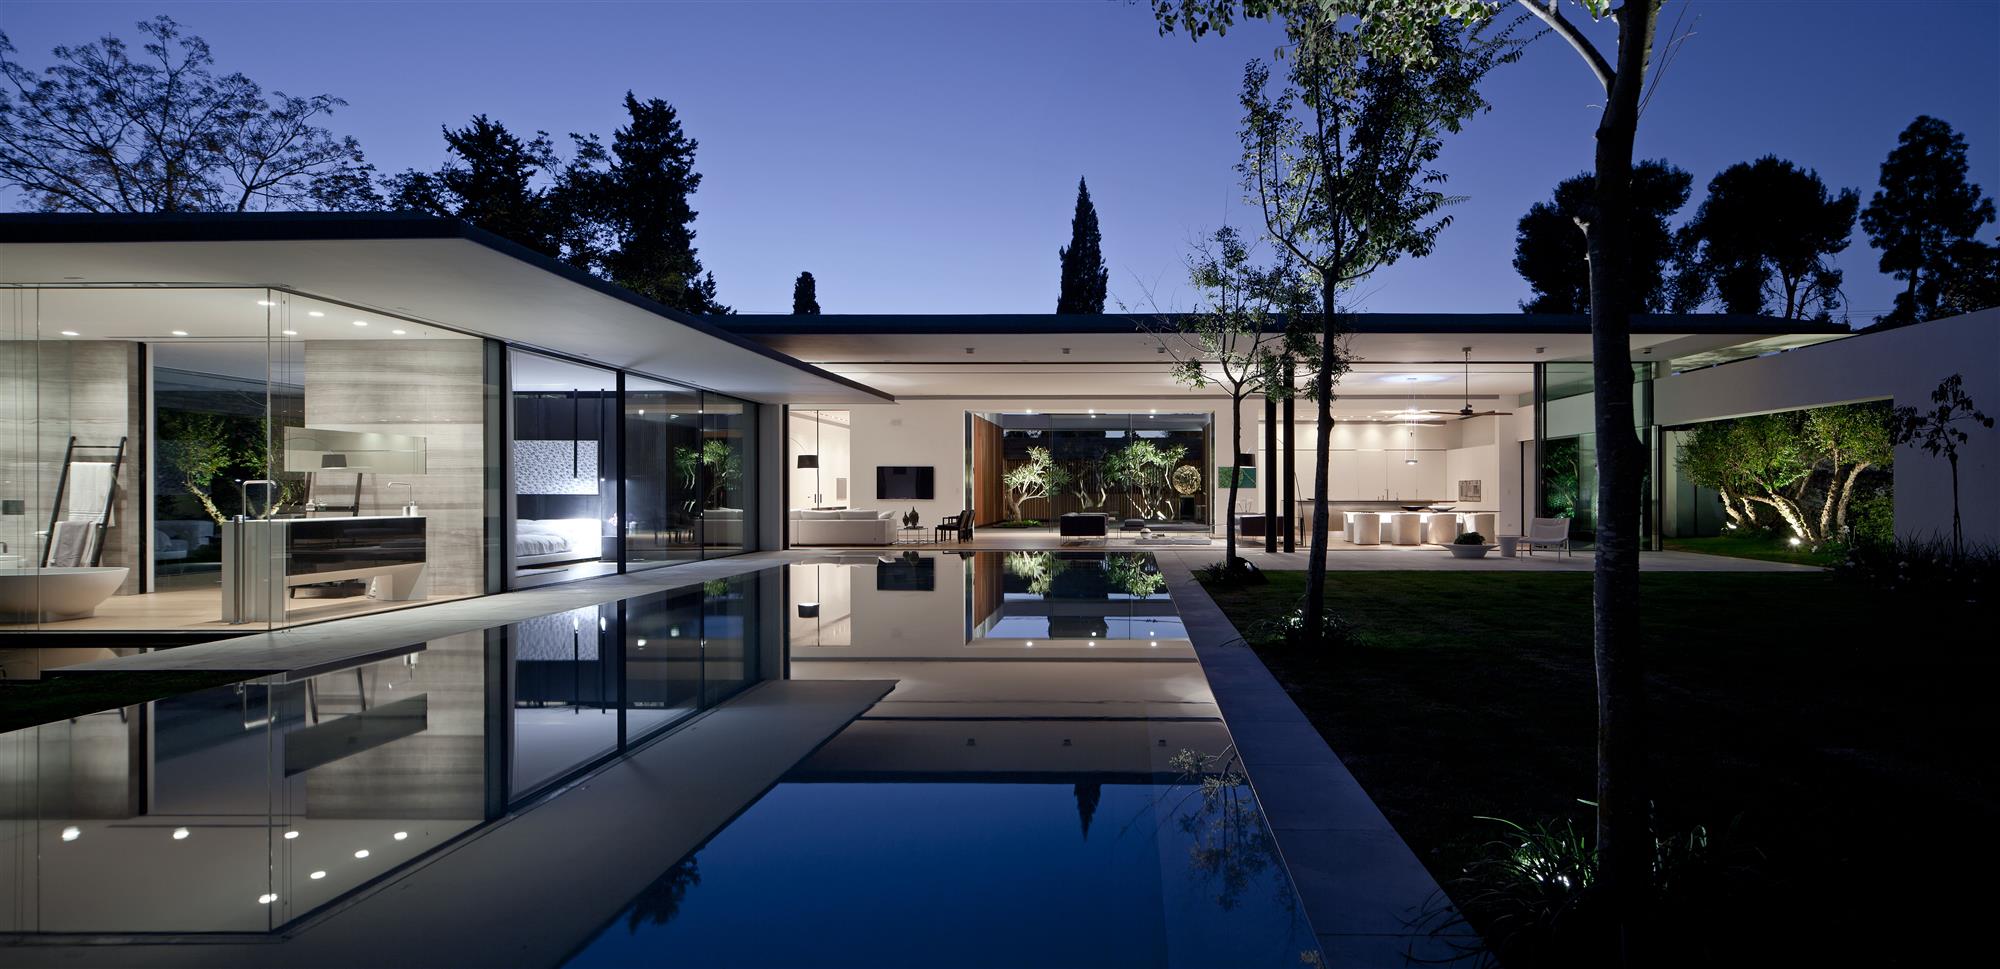 Modernist house tel aviv architect pitsou kedem - back pool